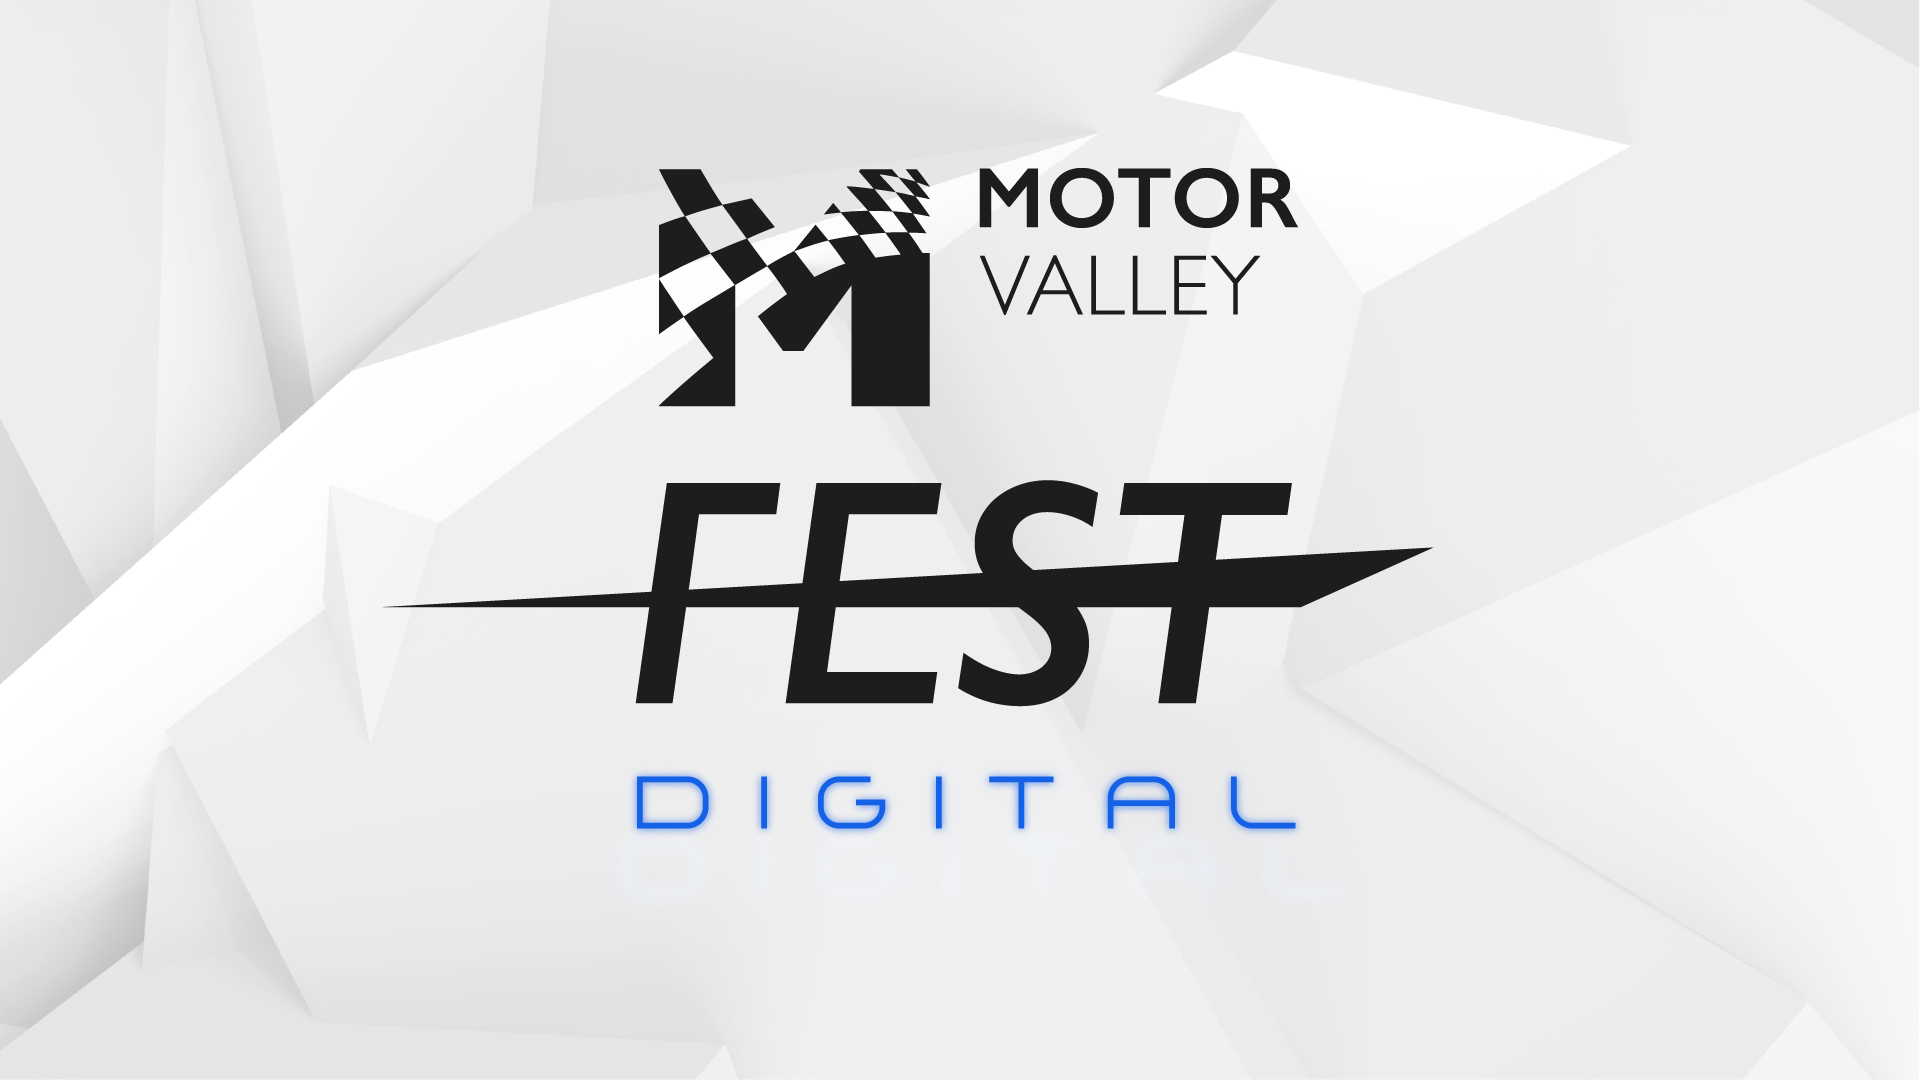 Il Motor Valley Fest diventa digitale: dal 14 al 17 maggio con un’innovativa edizione online.